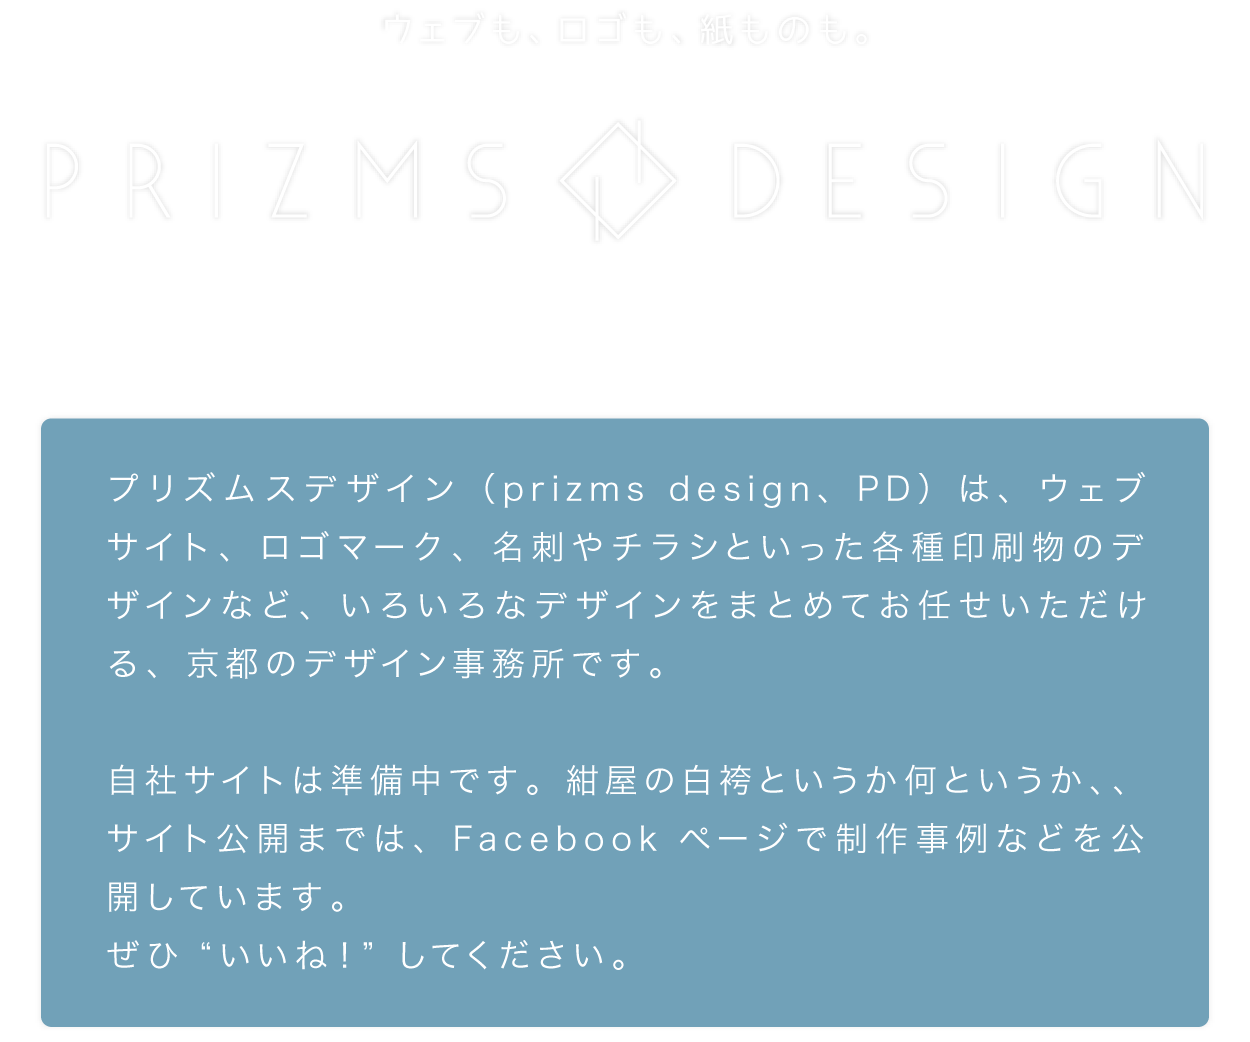 プリズムスデザイン（prizms design、PD）は、ウェブサイト、ロゴマーク、名刺やチラシといった各種印刷物のデザインなど、いろいろなデザインをまとめてお任せいただける、京都のデザイン事務所です。自社サイトは準備中です。紺屋の白袴というか何というか、、サイト公開までは、Facebookページで制作事例などを公開しています。ぜひ“いいね！”してください。